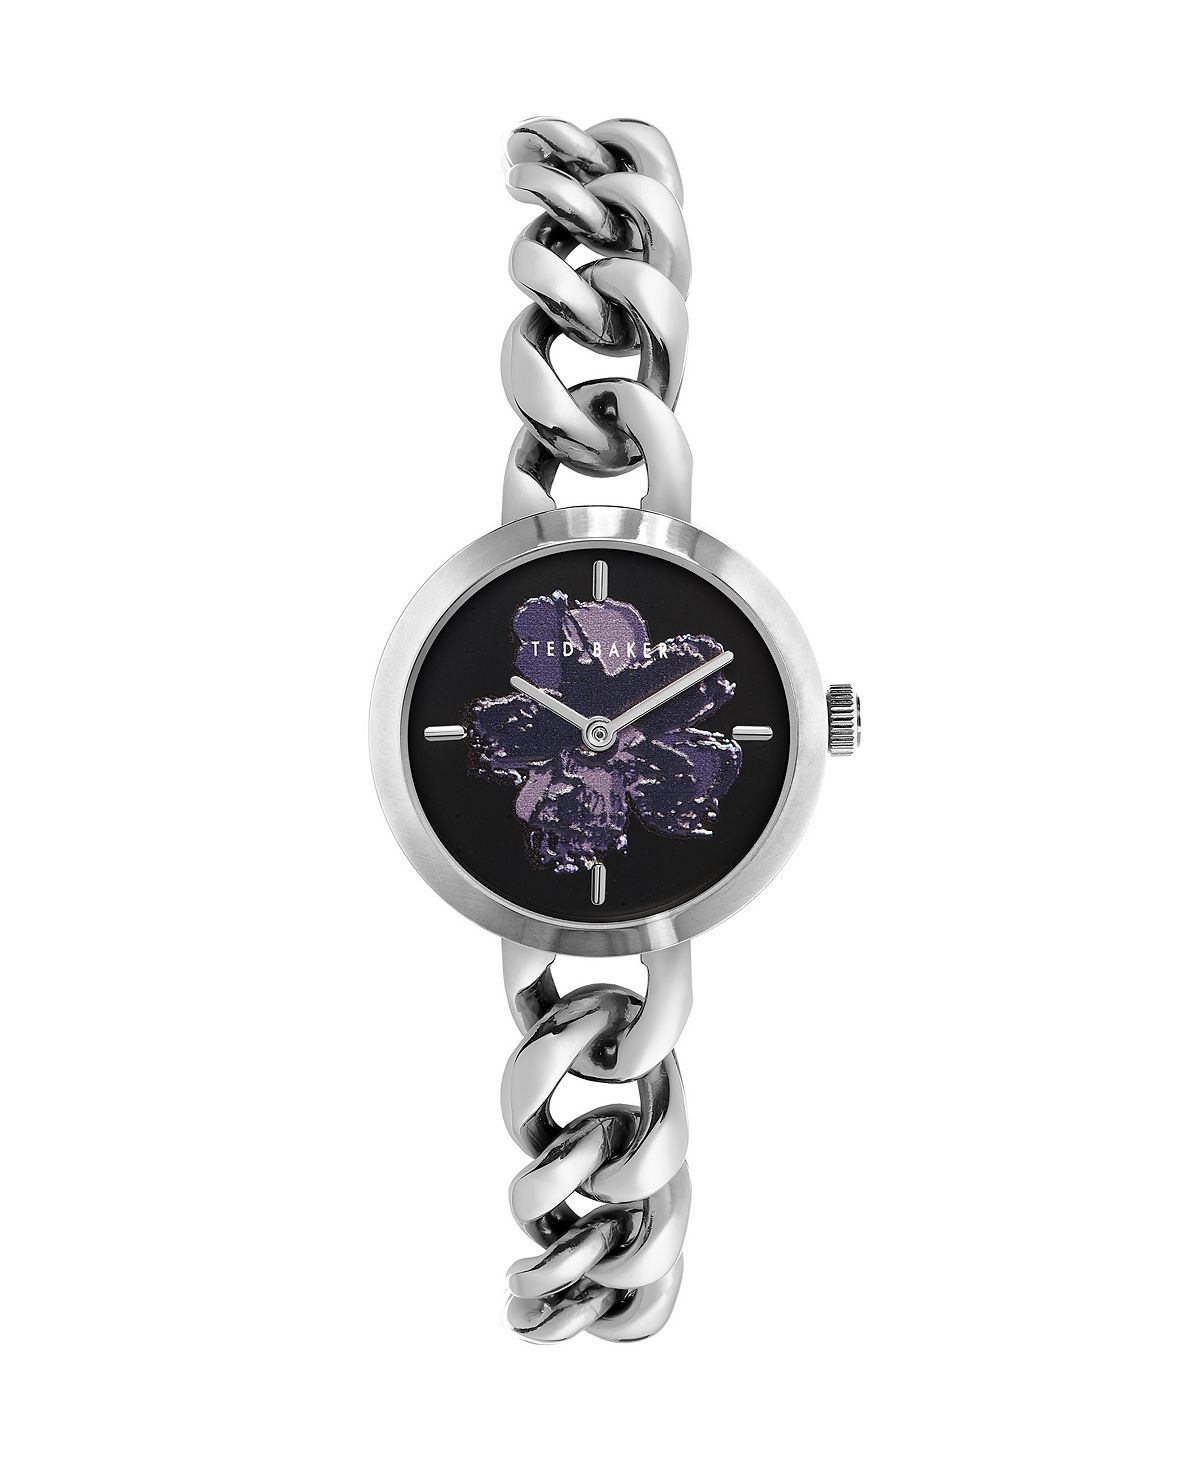 Женские часы Maiisie серебристого цвета с браслетом из нержавеющей стали, 28 мм Ted Baker женские часы cristal из нержавеющей стали серебристого цвета 28 мм jbw